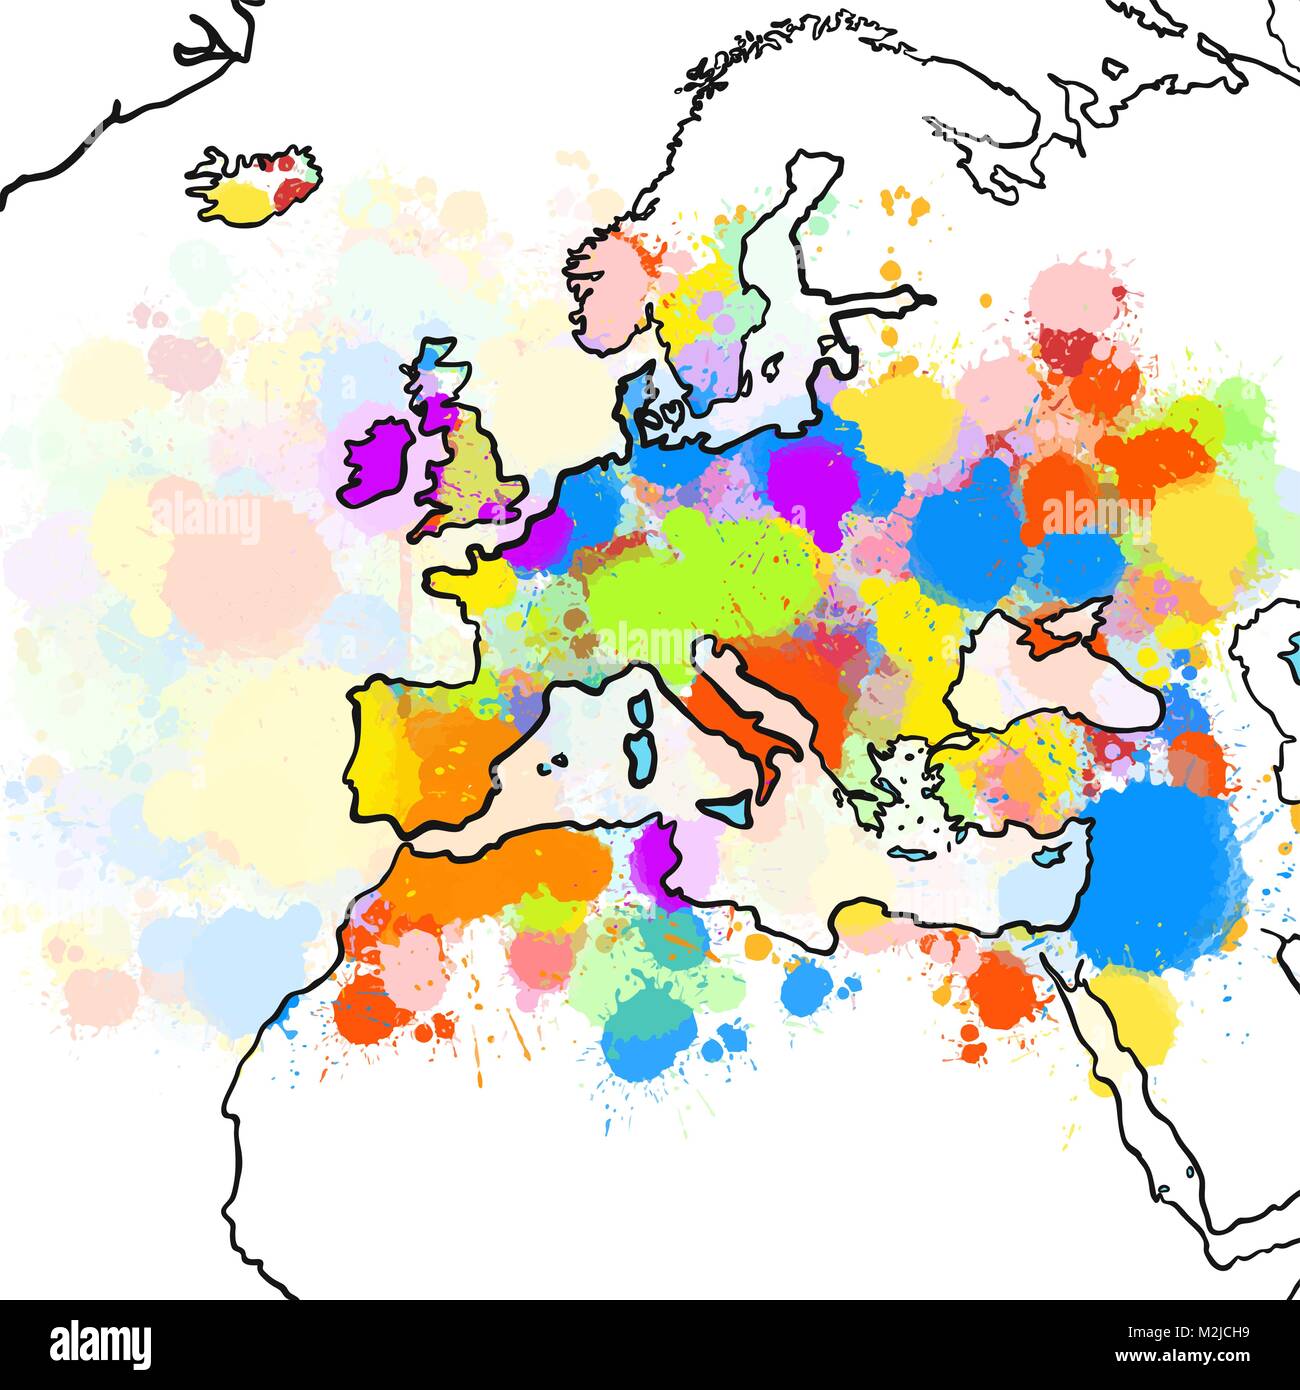 Verniciato colorato Mappa di Europa. Disegnata a mano illustrazione vettoriale, spruzzi di vernice di colore isolato su sfondo bianco. Viaggi di affari e turismo Concept Illustrazione Vettoriale